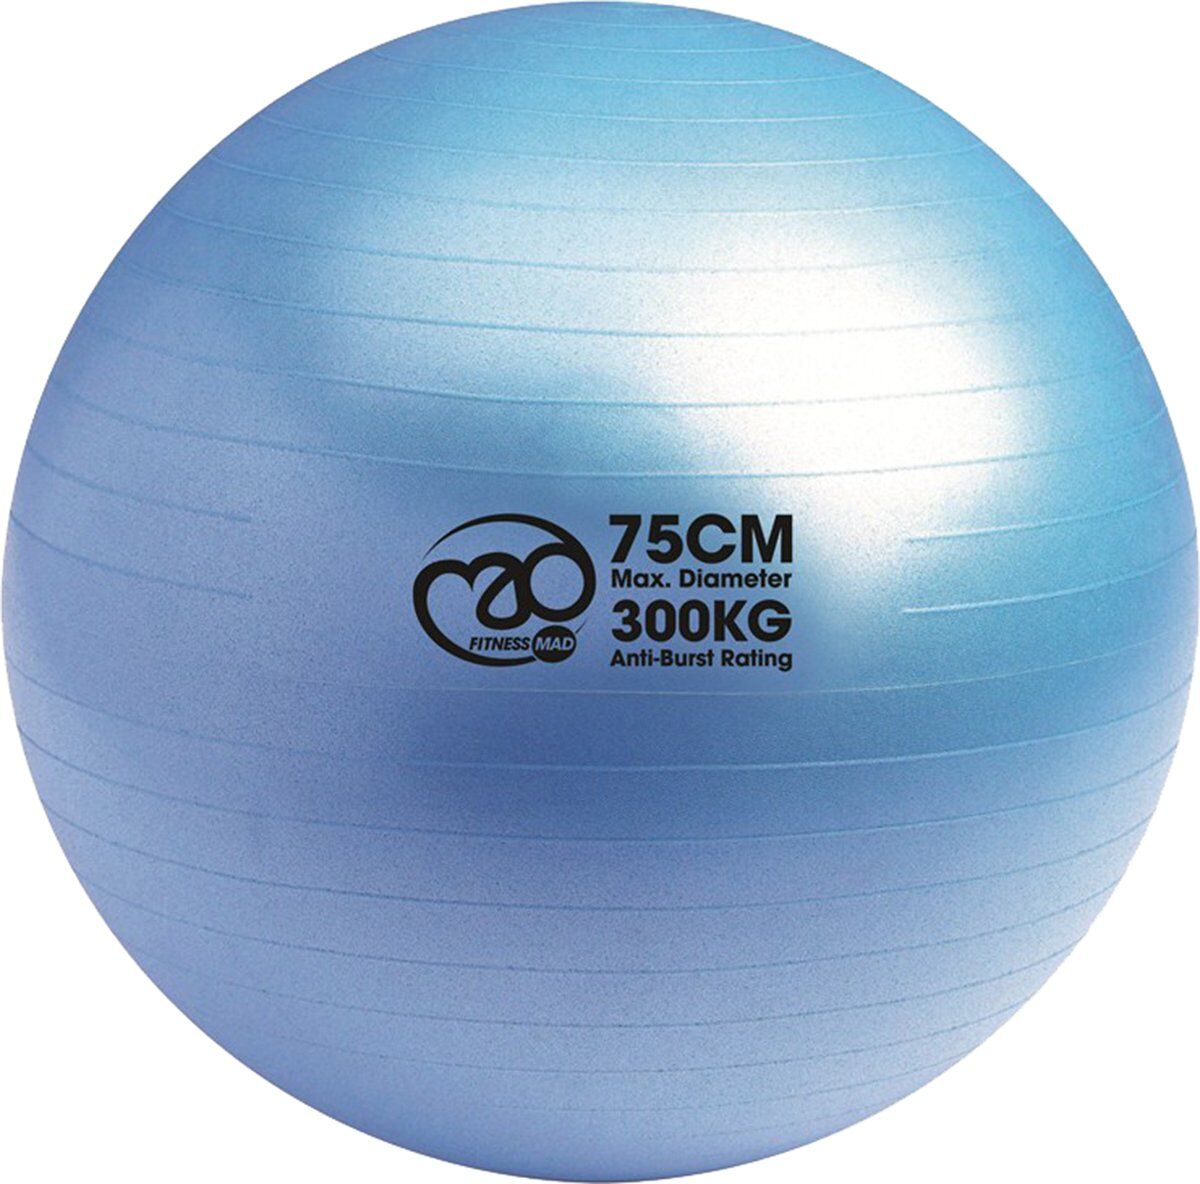 ironie cultuur voordeel Swiss Ball 75 cm en belastbaar tot 300 kg. Scherpe prijs.